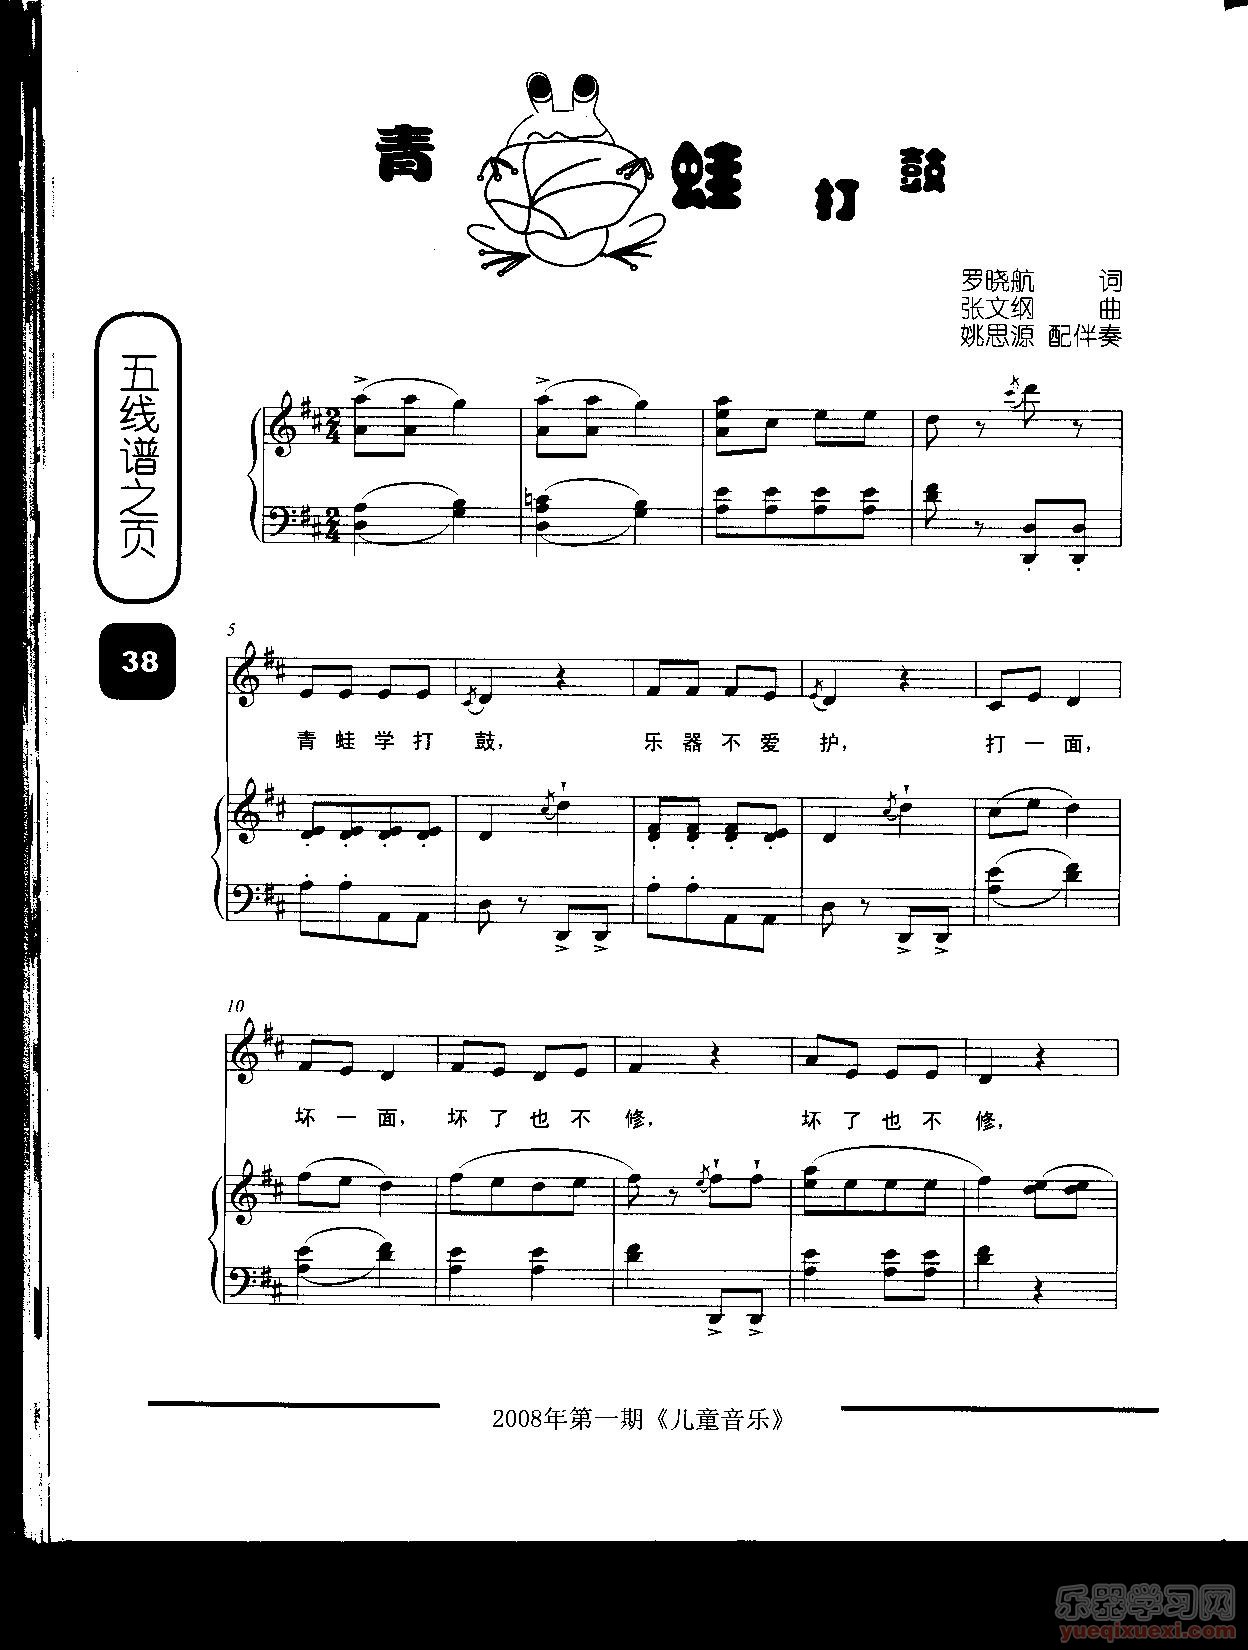 青蛙打鼓（童声表演唱、配钢琴伴奏）